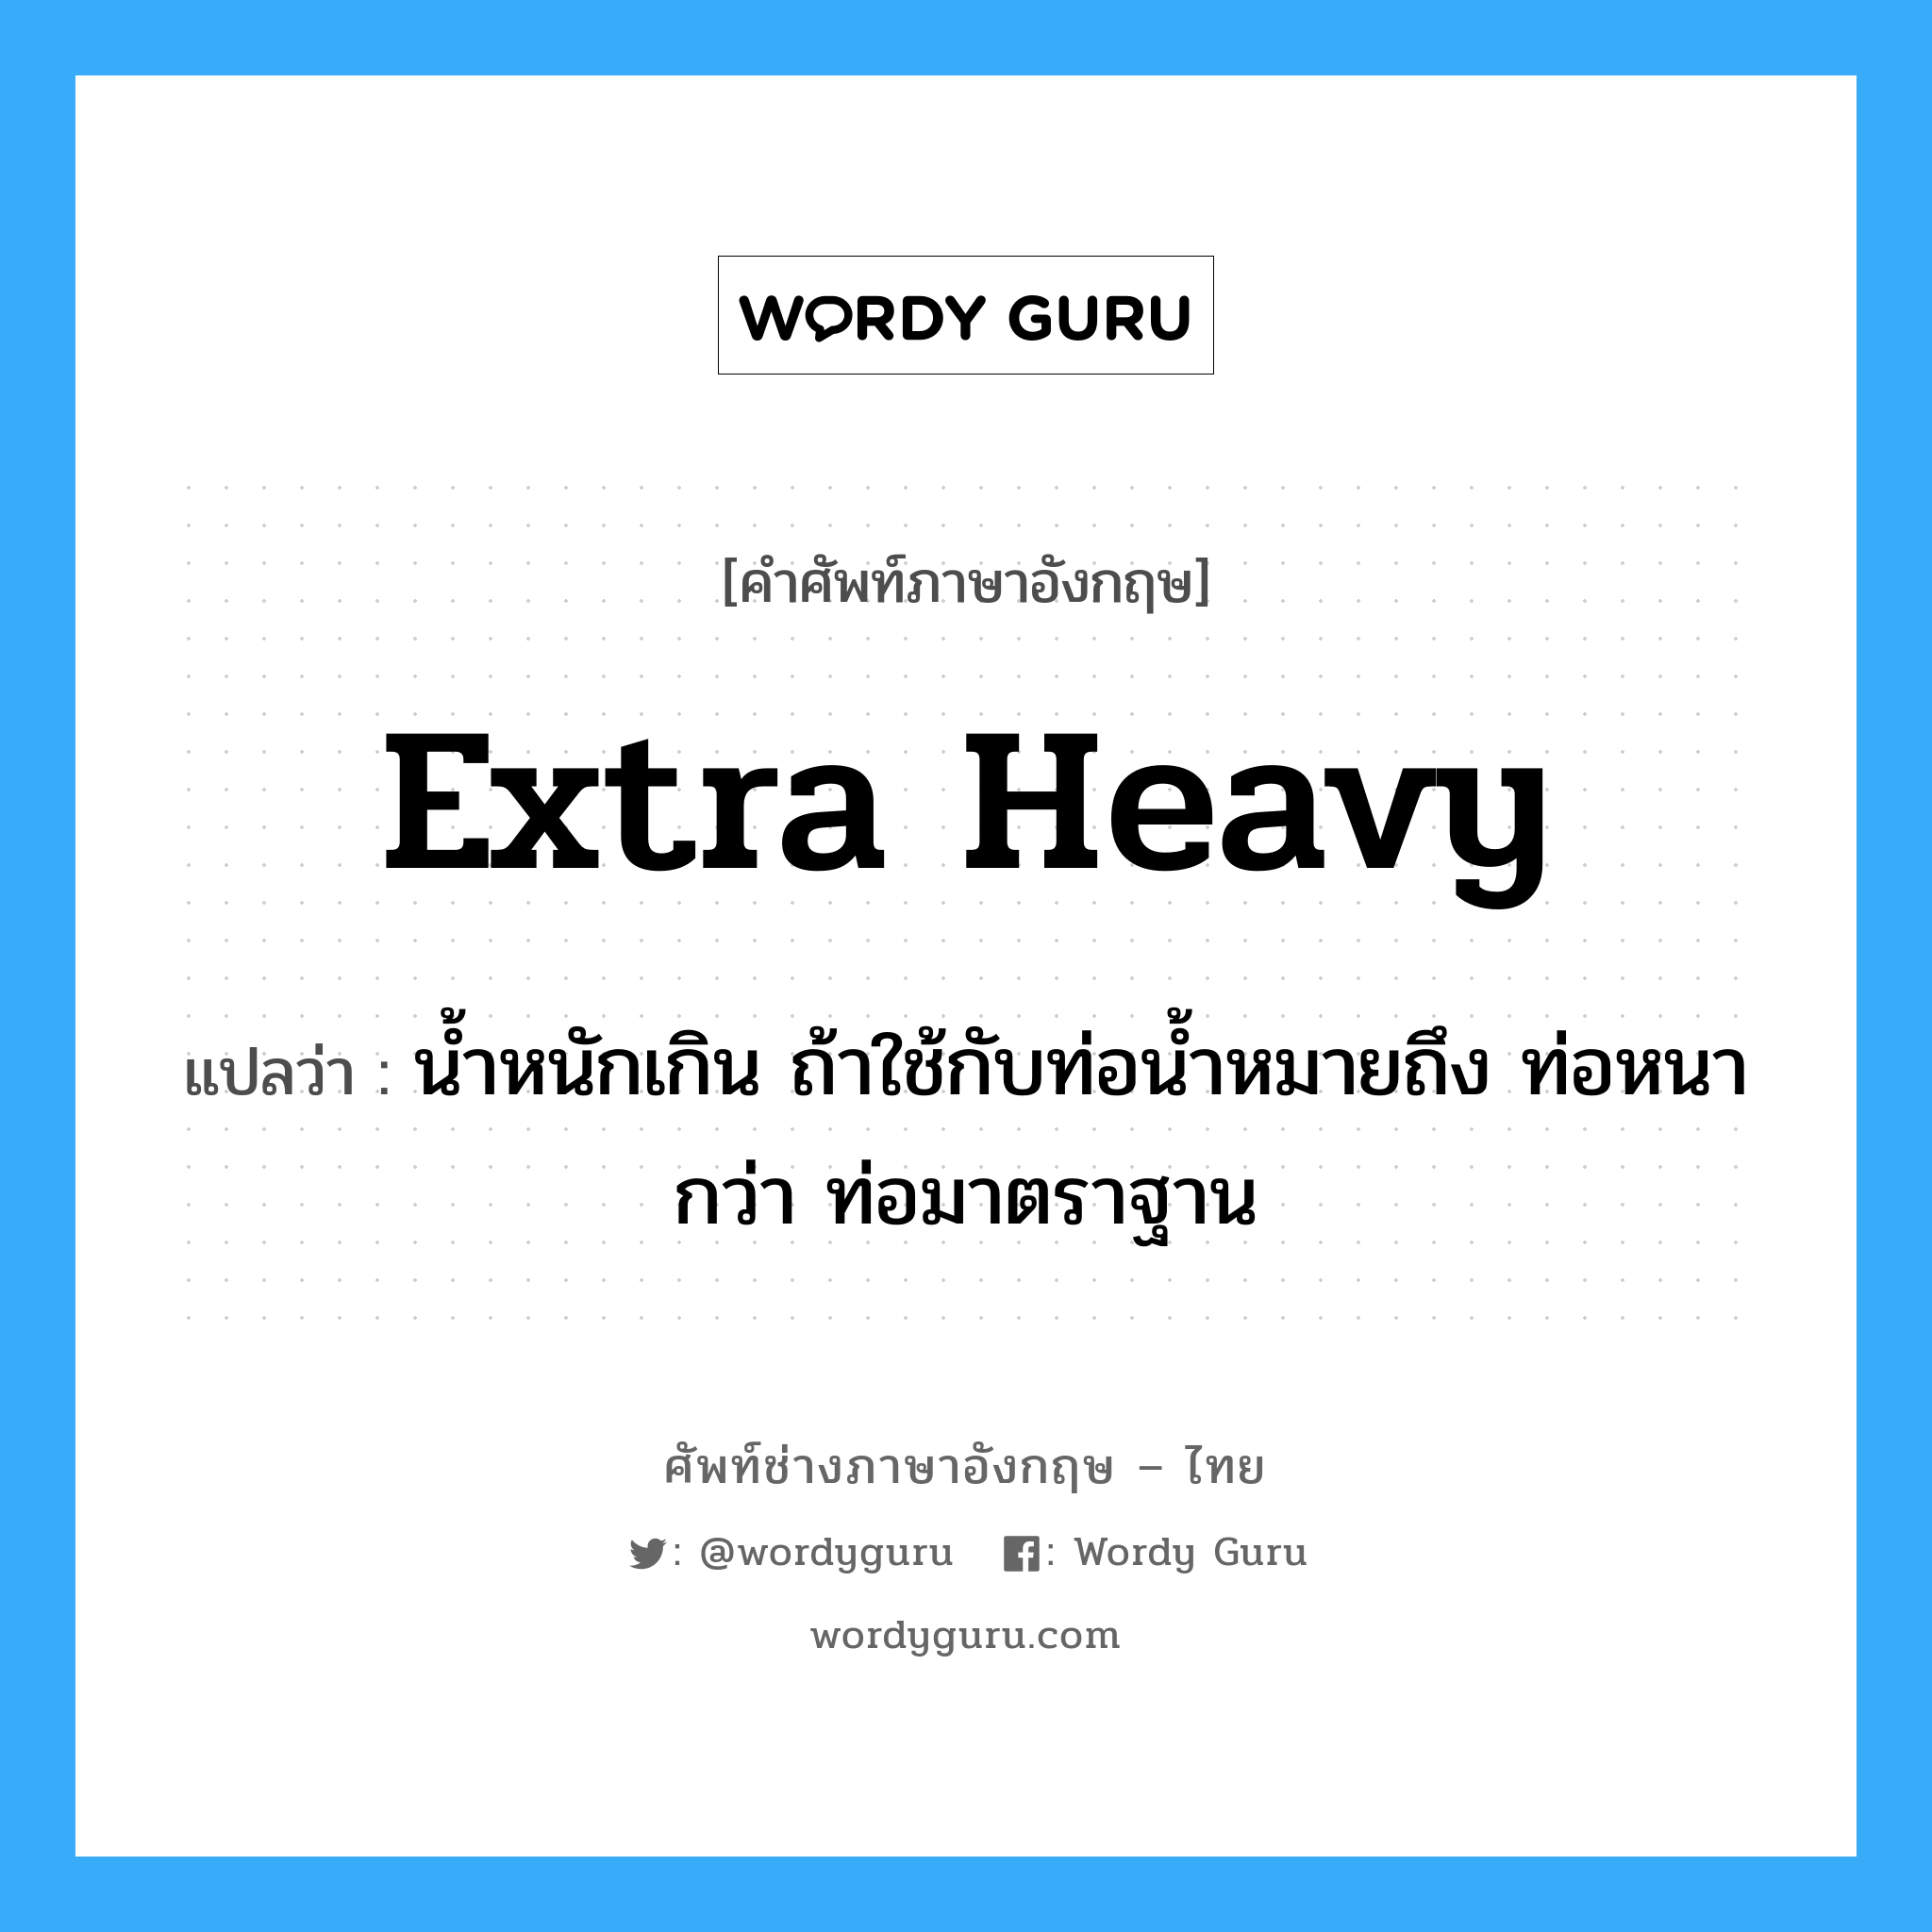 extra heavy แปลว่า?, คำศัพท์ช่างภาษาอังกฤษ - ไทย extra heavy คำศัพท์ภาษาอังกฤษ extra heavy แปลว่า น้ำหนักเกิน ถ้าใช้กับท่อน้ำหมายถึง ท่อหนากว่า ท่อมาตราฐาน